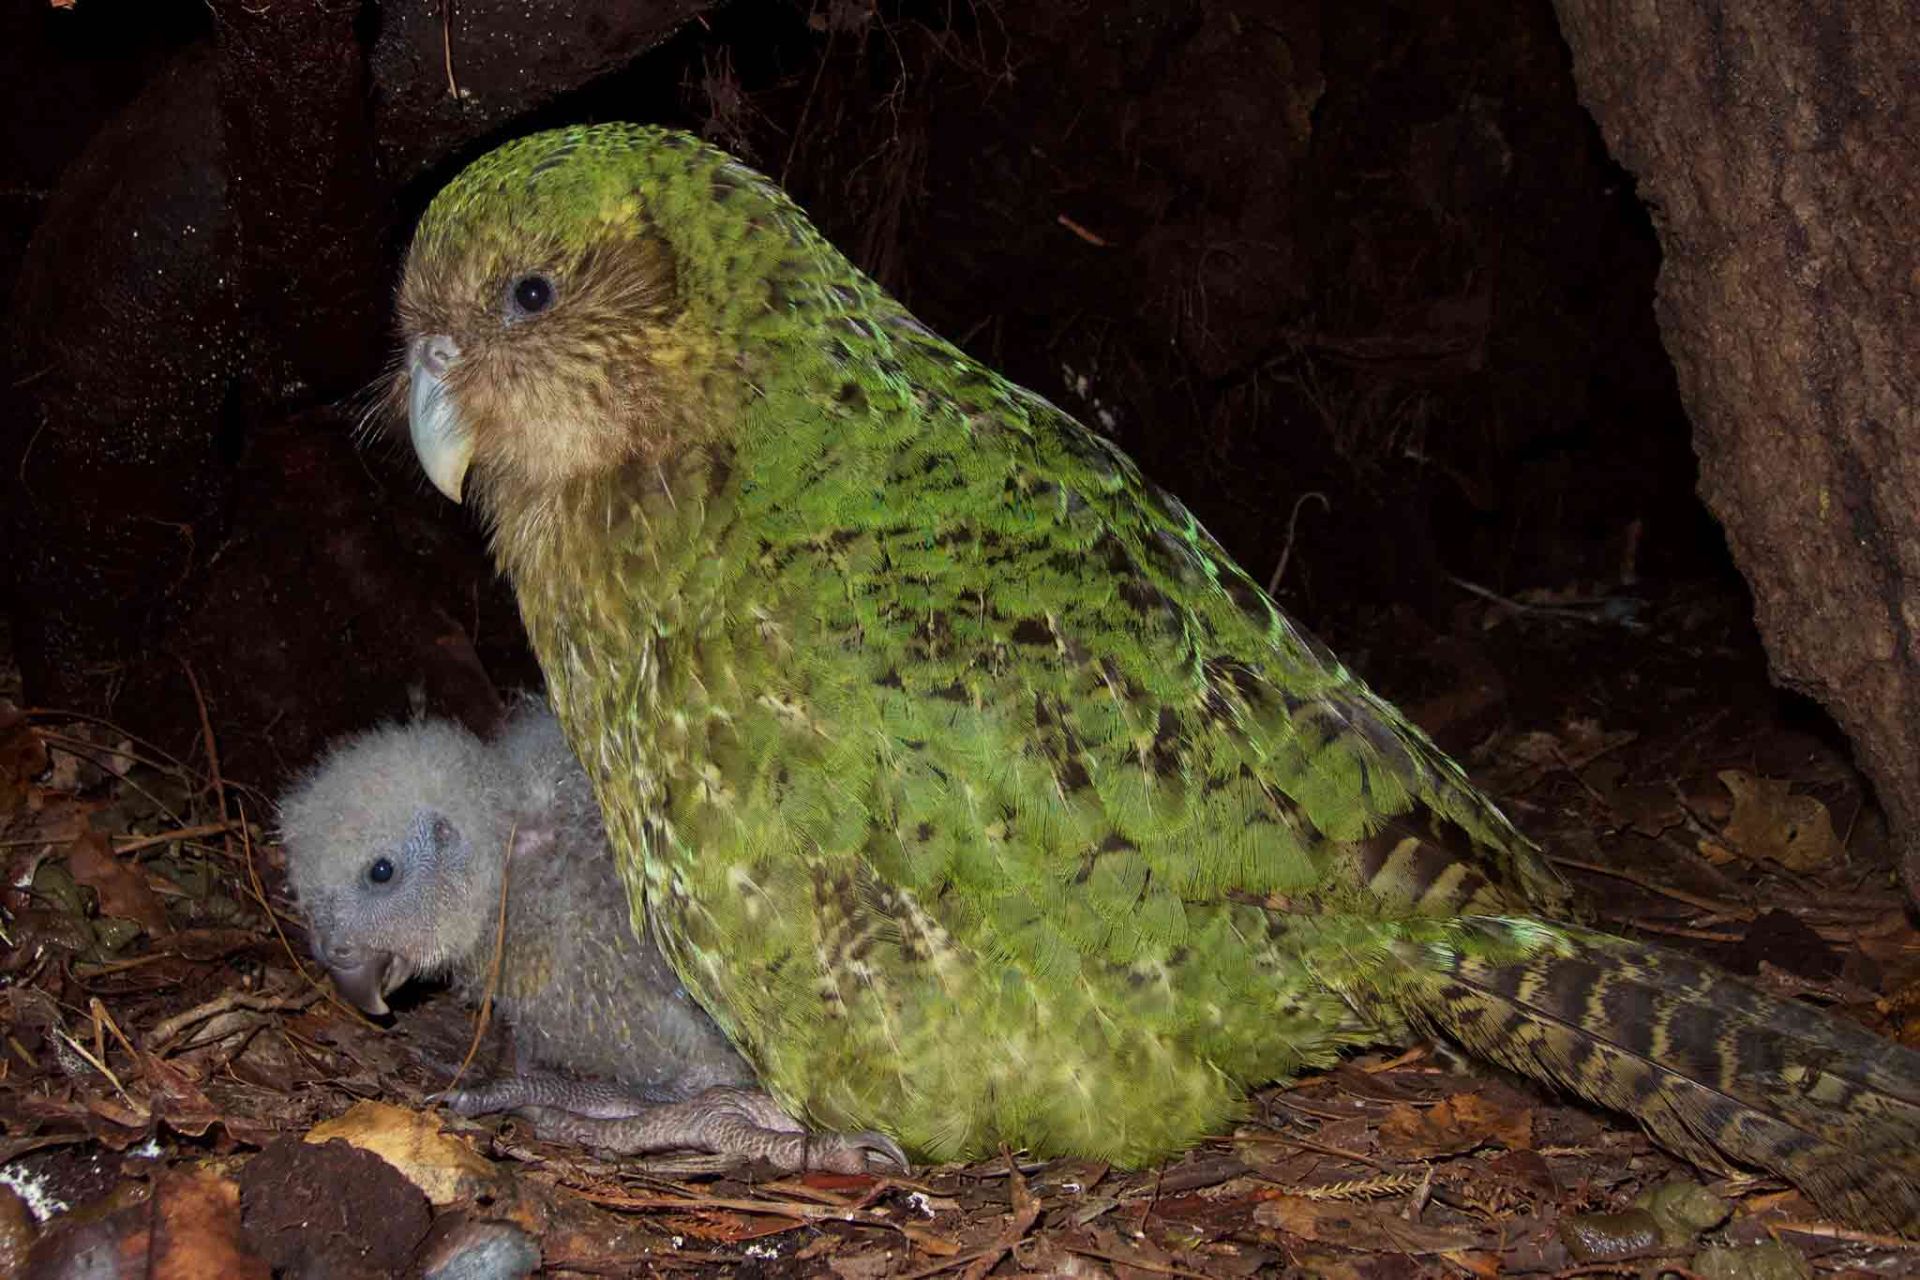 مرجع متخصصين ايران كاكاپو / Kakapo